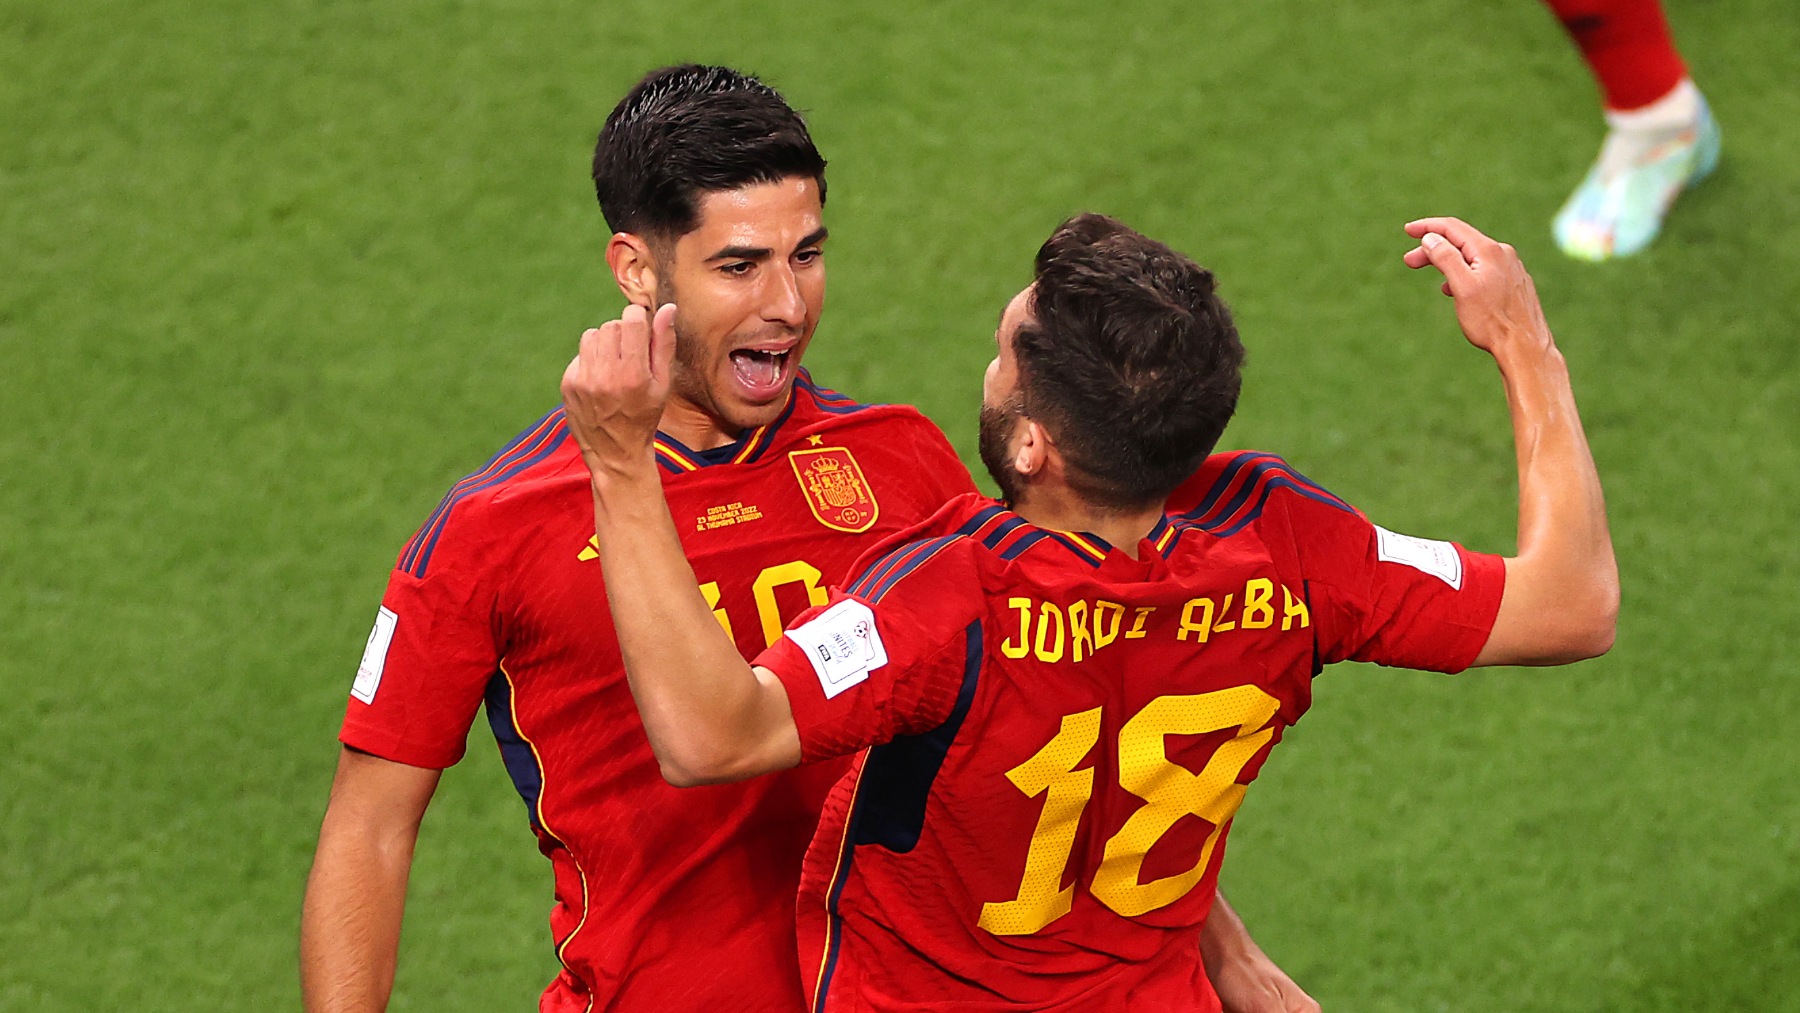 Asensio y Jordi Alaba celebran uno de los goles. (Getty)